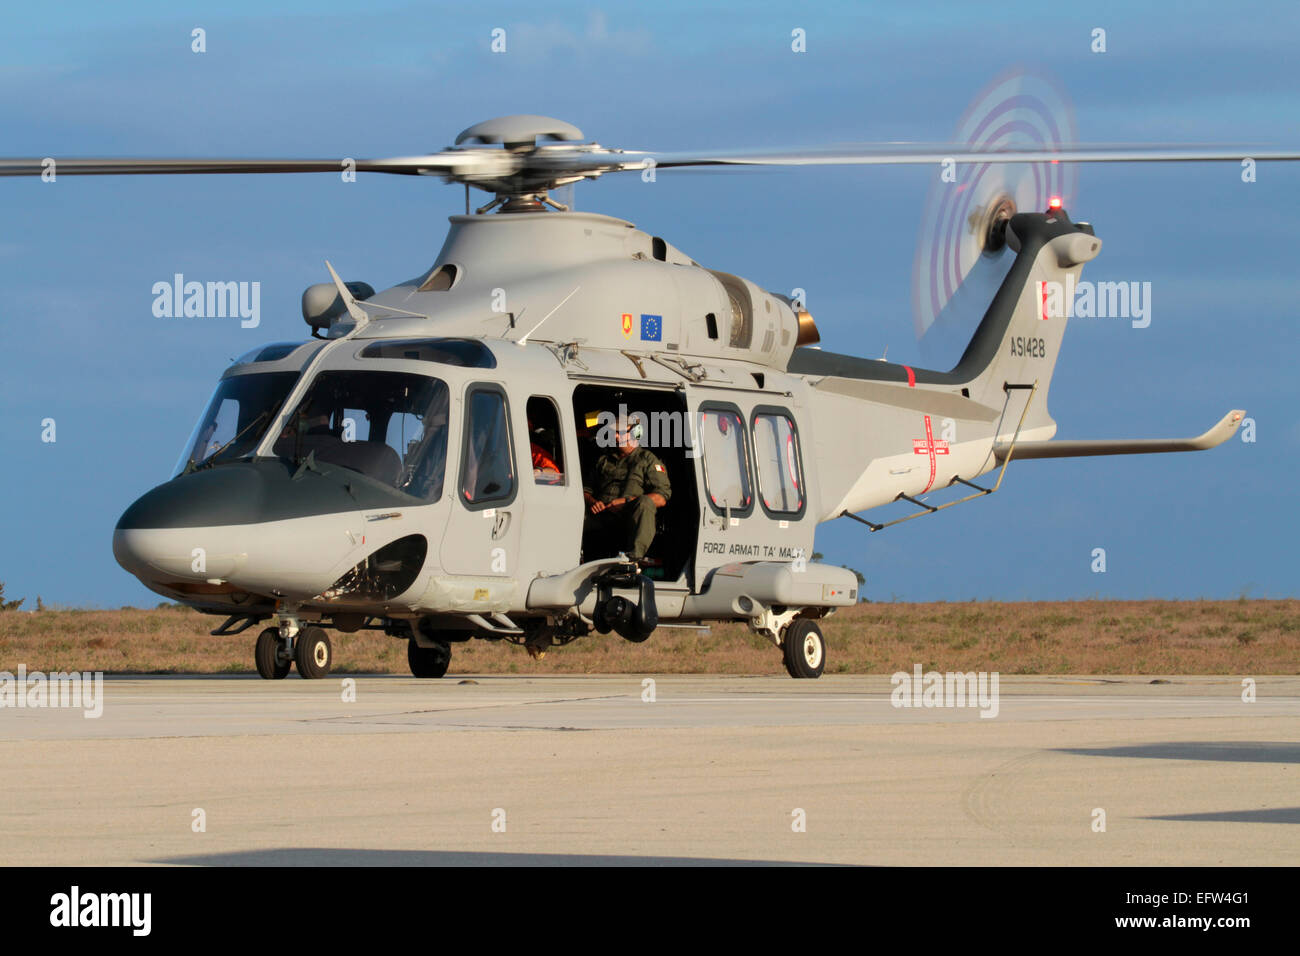 Militärhubschrauber. AgustaWestland AW139 der Streitkräfte von Malta auf dem Boden mit Motor läuft und Rotoren drehen Stockfoto